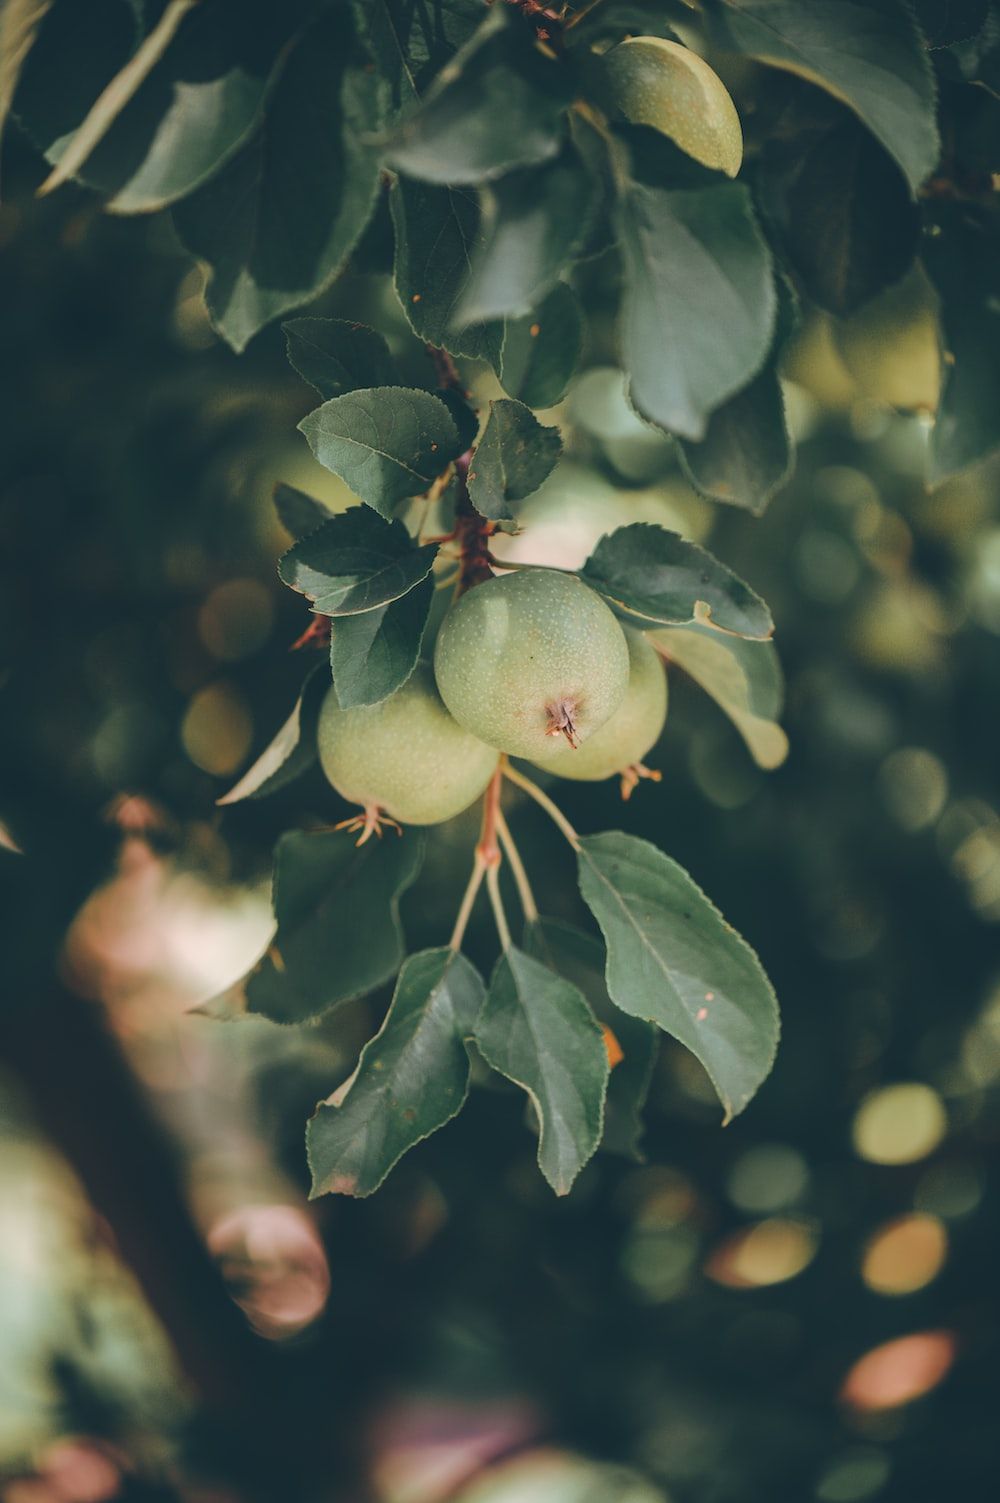  Obst Hintergrundbild 1000x1503. Foto zum Thema Ein Strauß Obst, der an einem Baum hängt